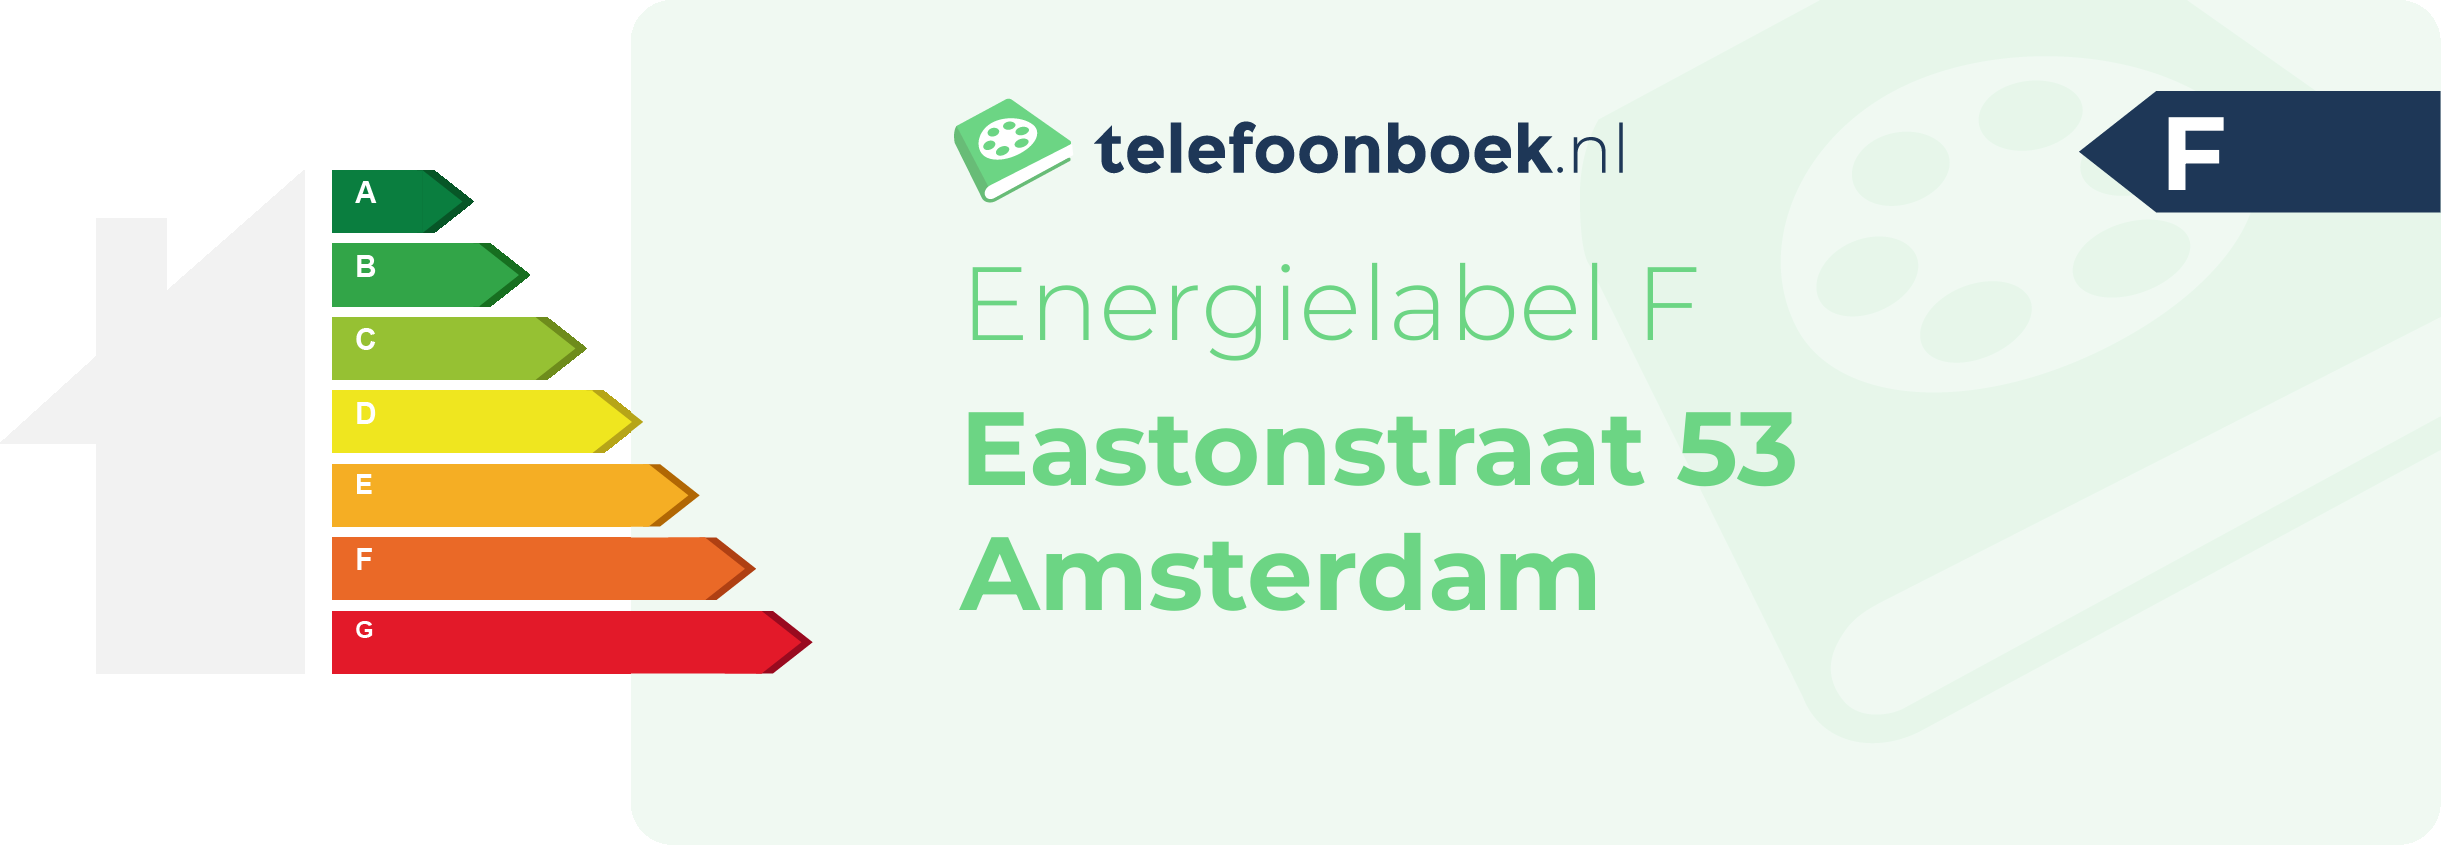 Energielabel Eastonstraat 53 Amsterdam